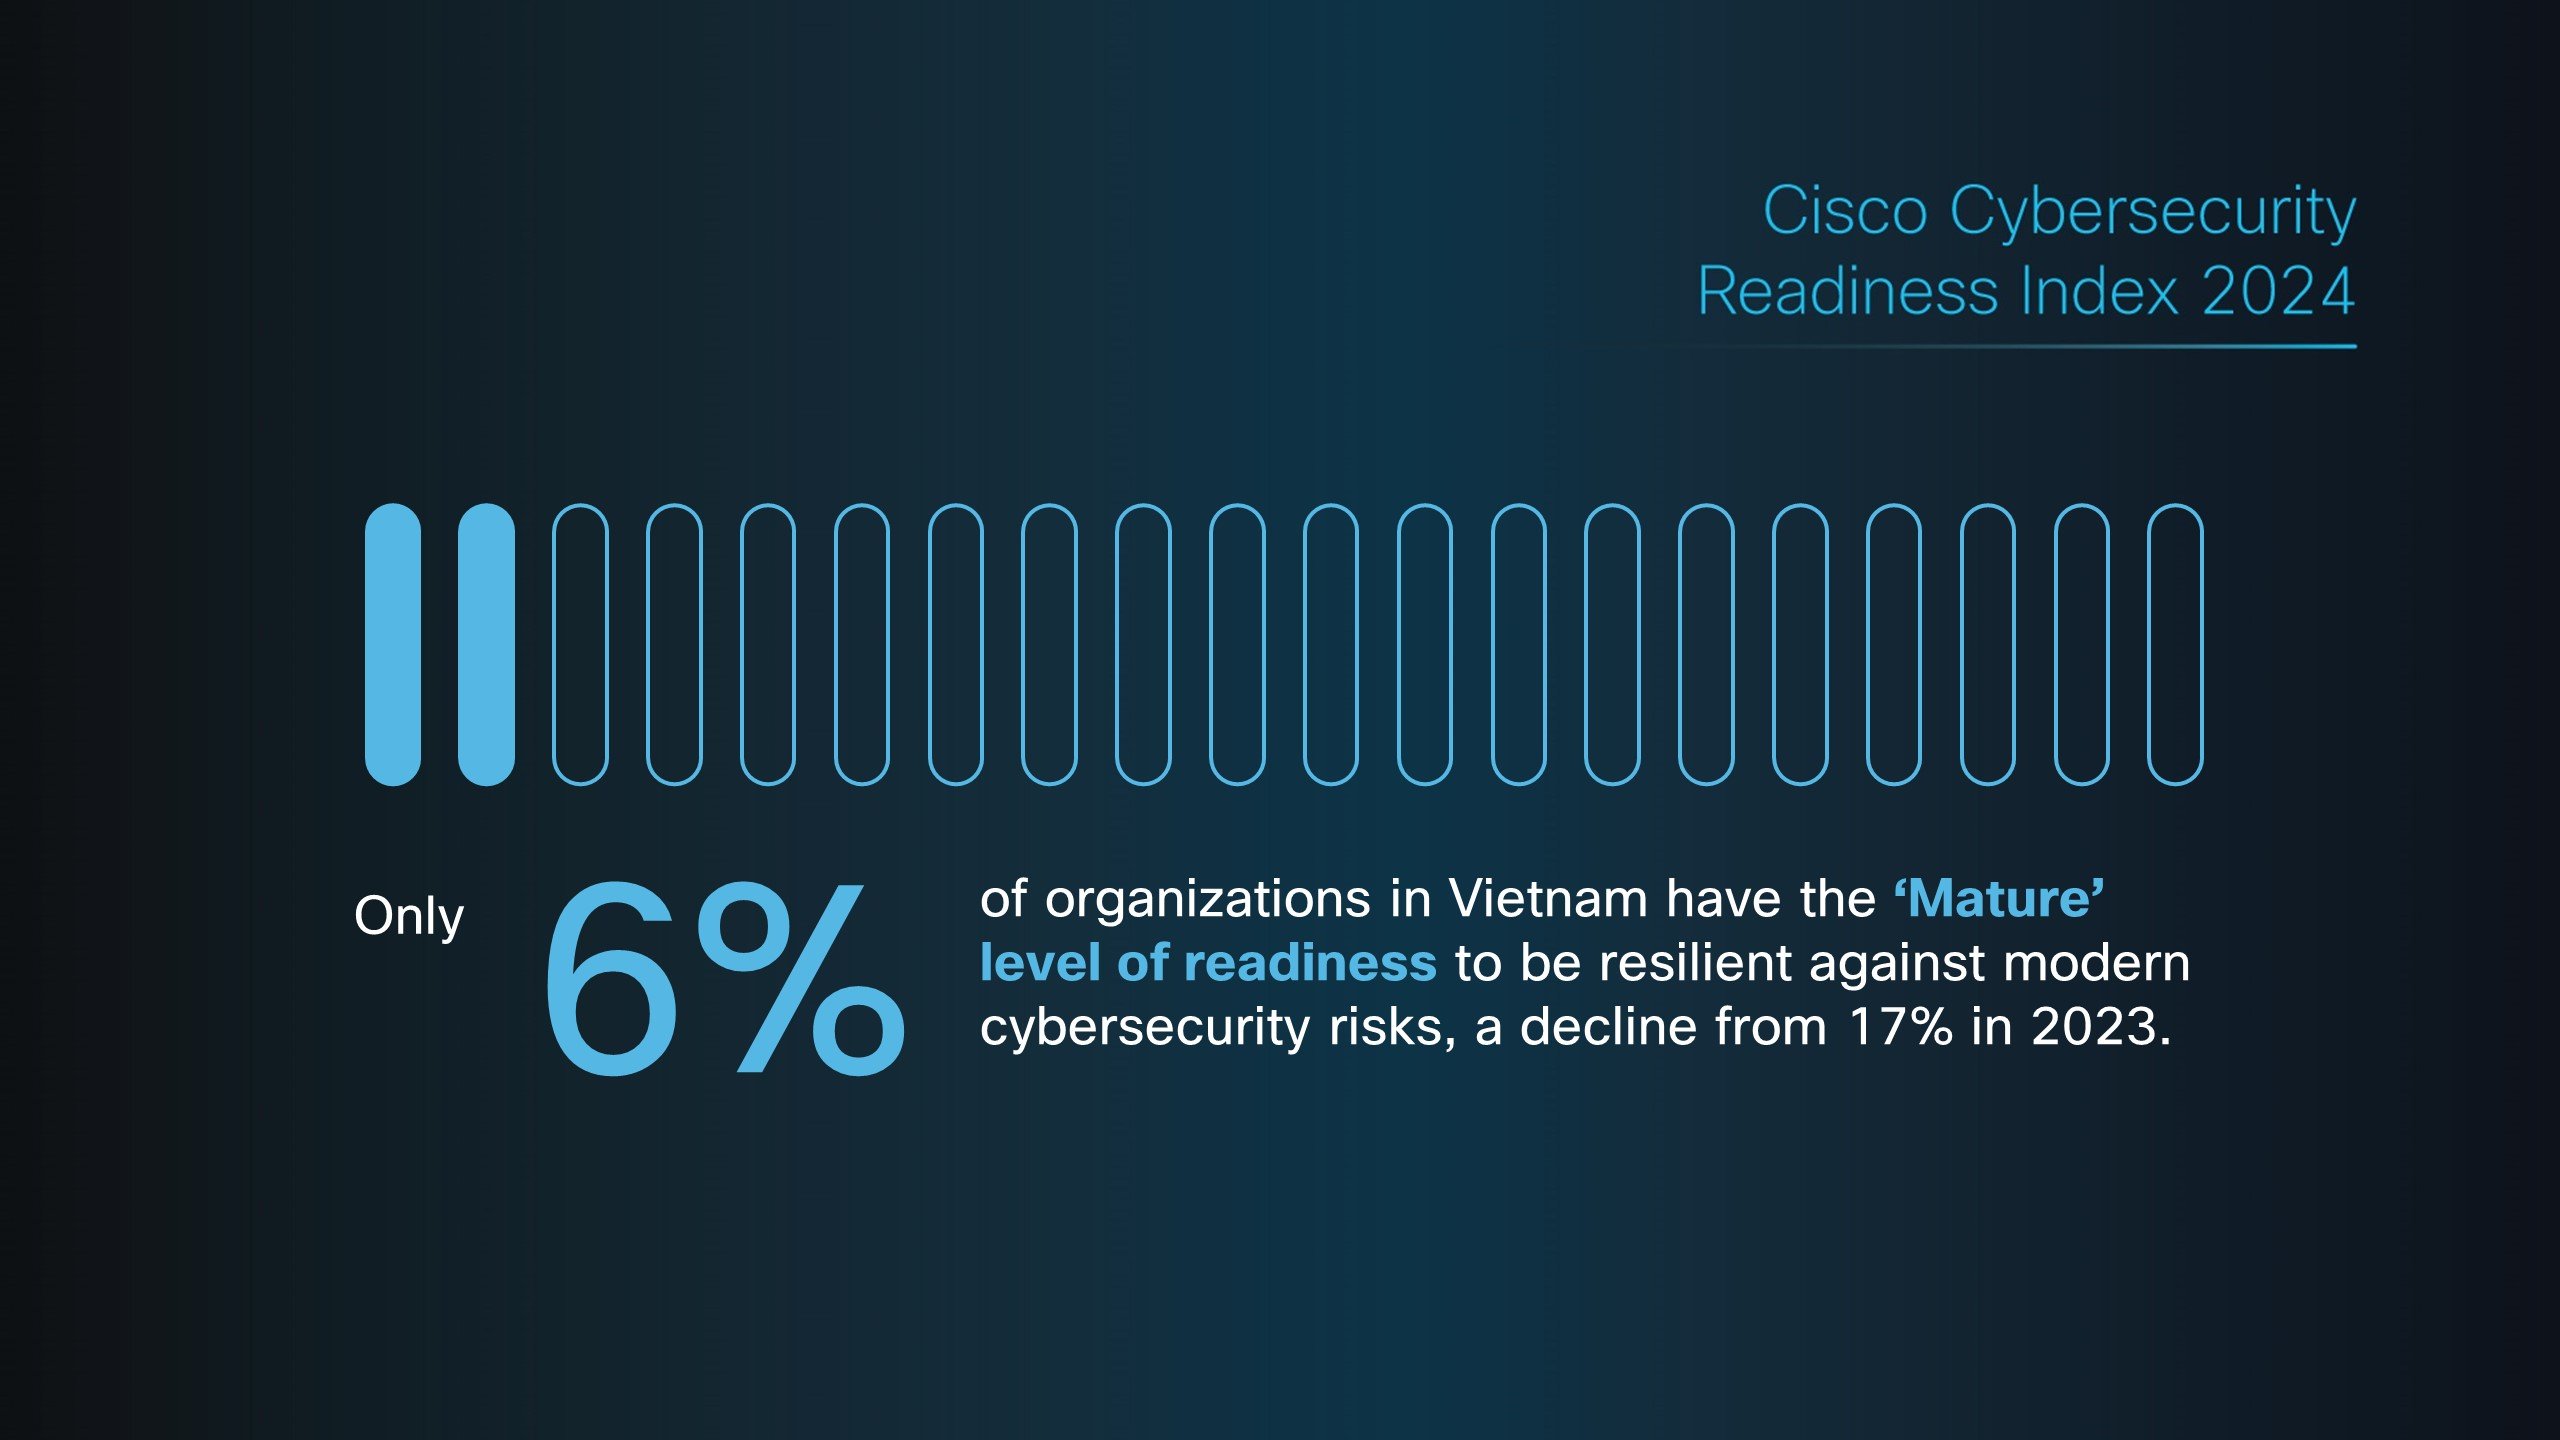 Chỉ số ít tổ chức tại Việt Nam sẵn sàng đối phó với rủi ro về an ninh mạng ngày càng gia tăng